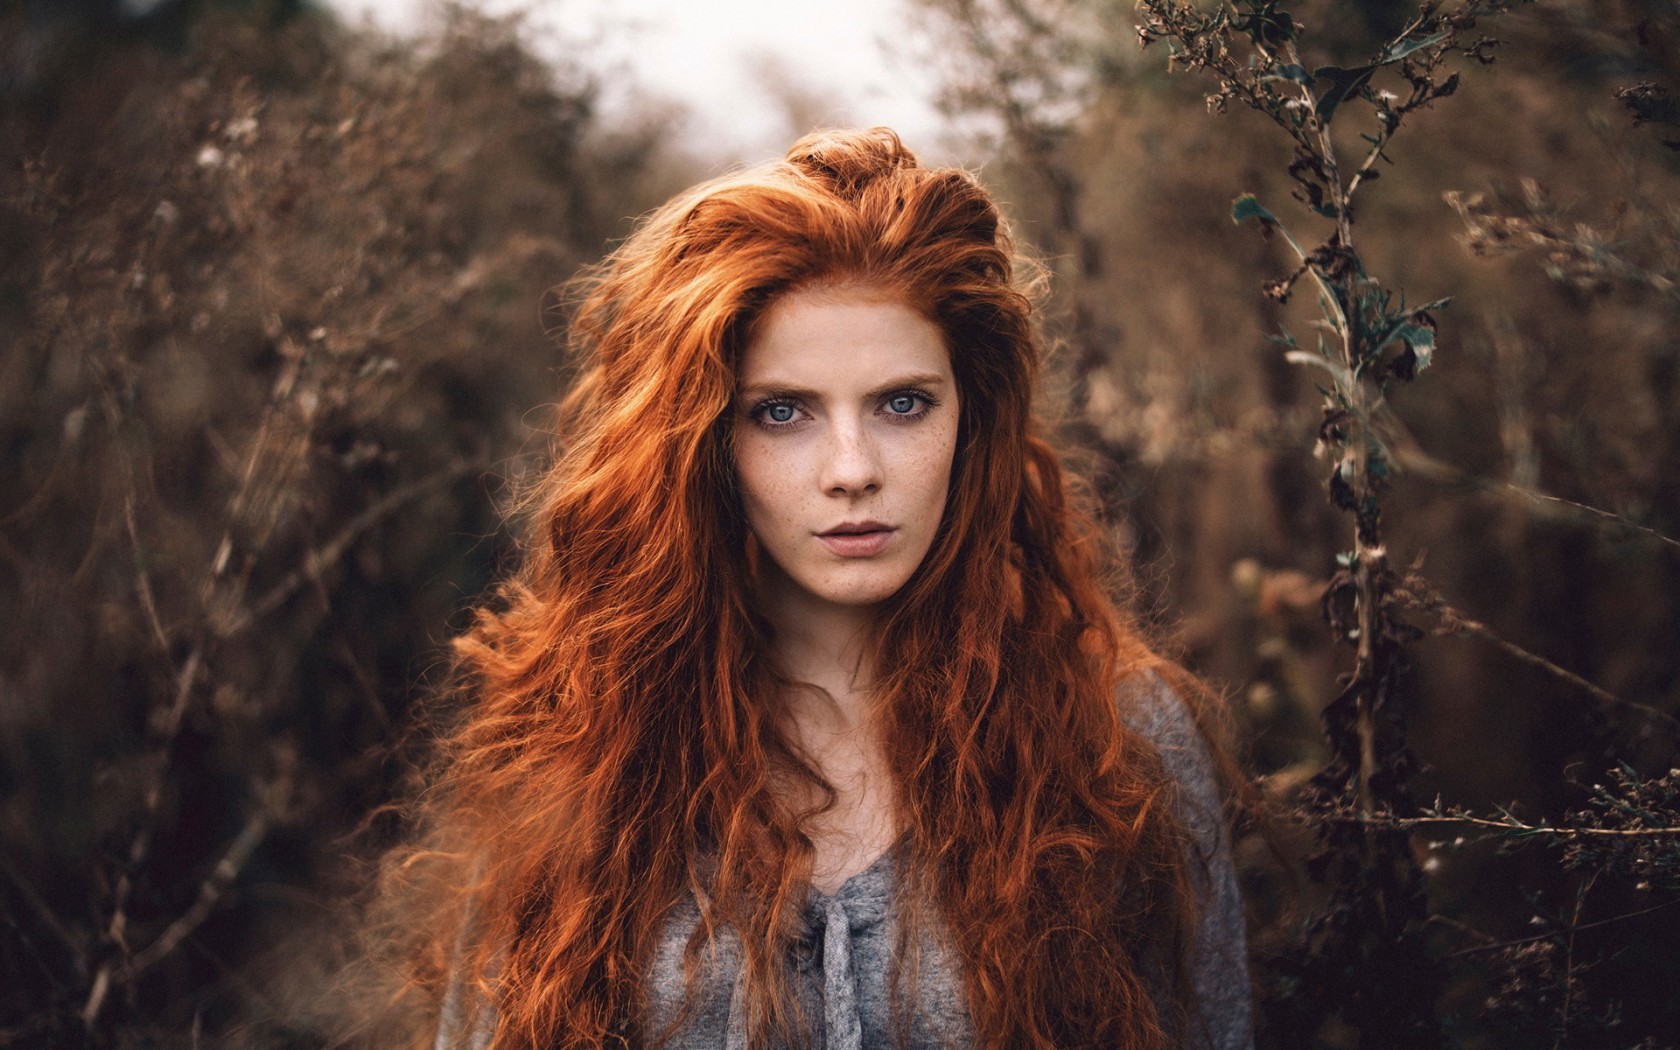 Martin Kühn Women Long Hair Women Outdoors Redhead Wavy Hair Looking At Viewer Depth Of